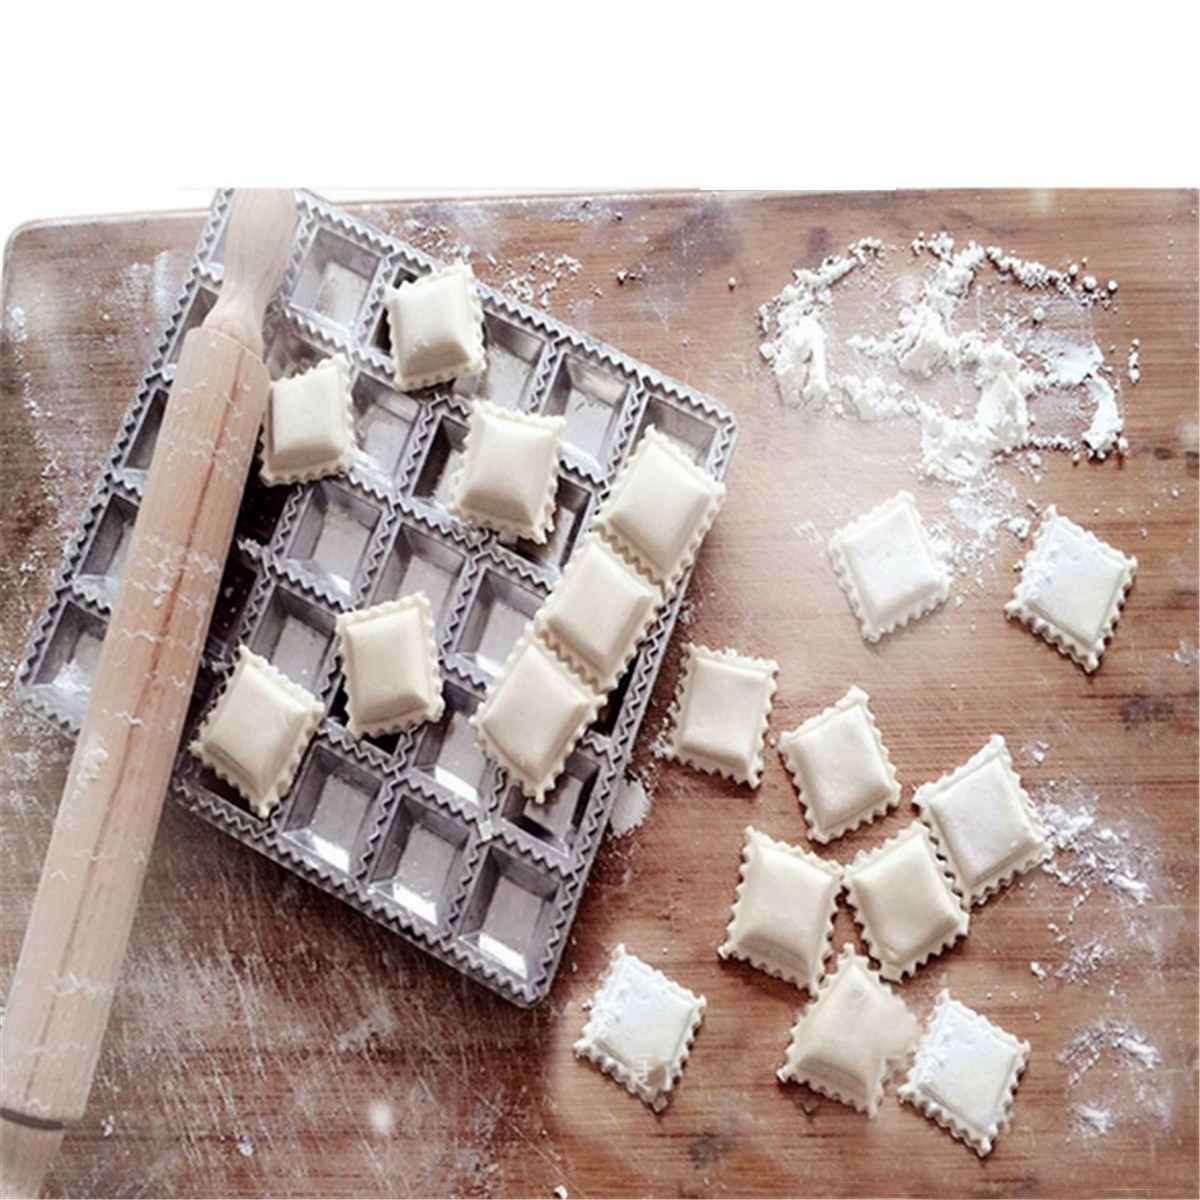 DIY-Mould-Ravioli-Maker-Gadgets-Press-Pasta-Dough-Dumpling-Mold-Kitchen-Tool-1139828